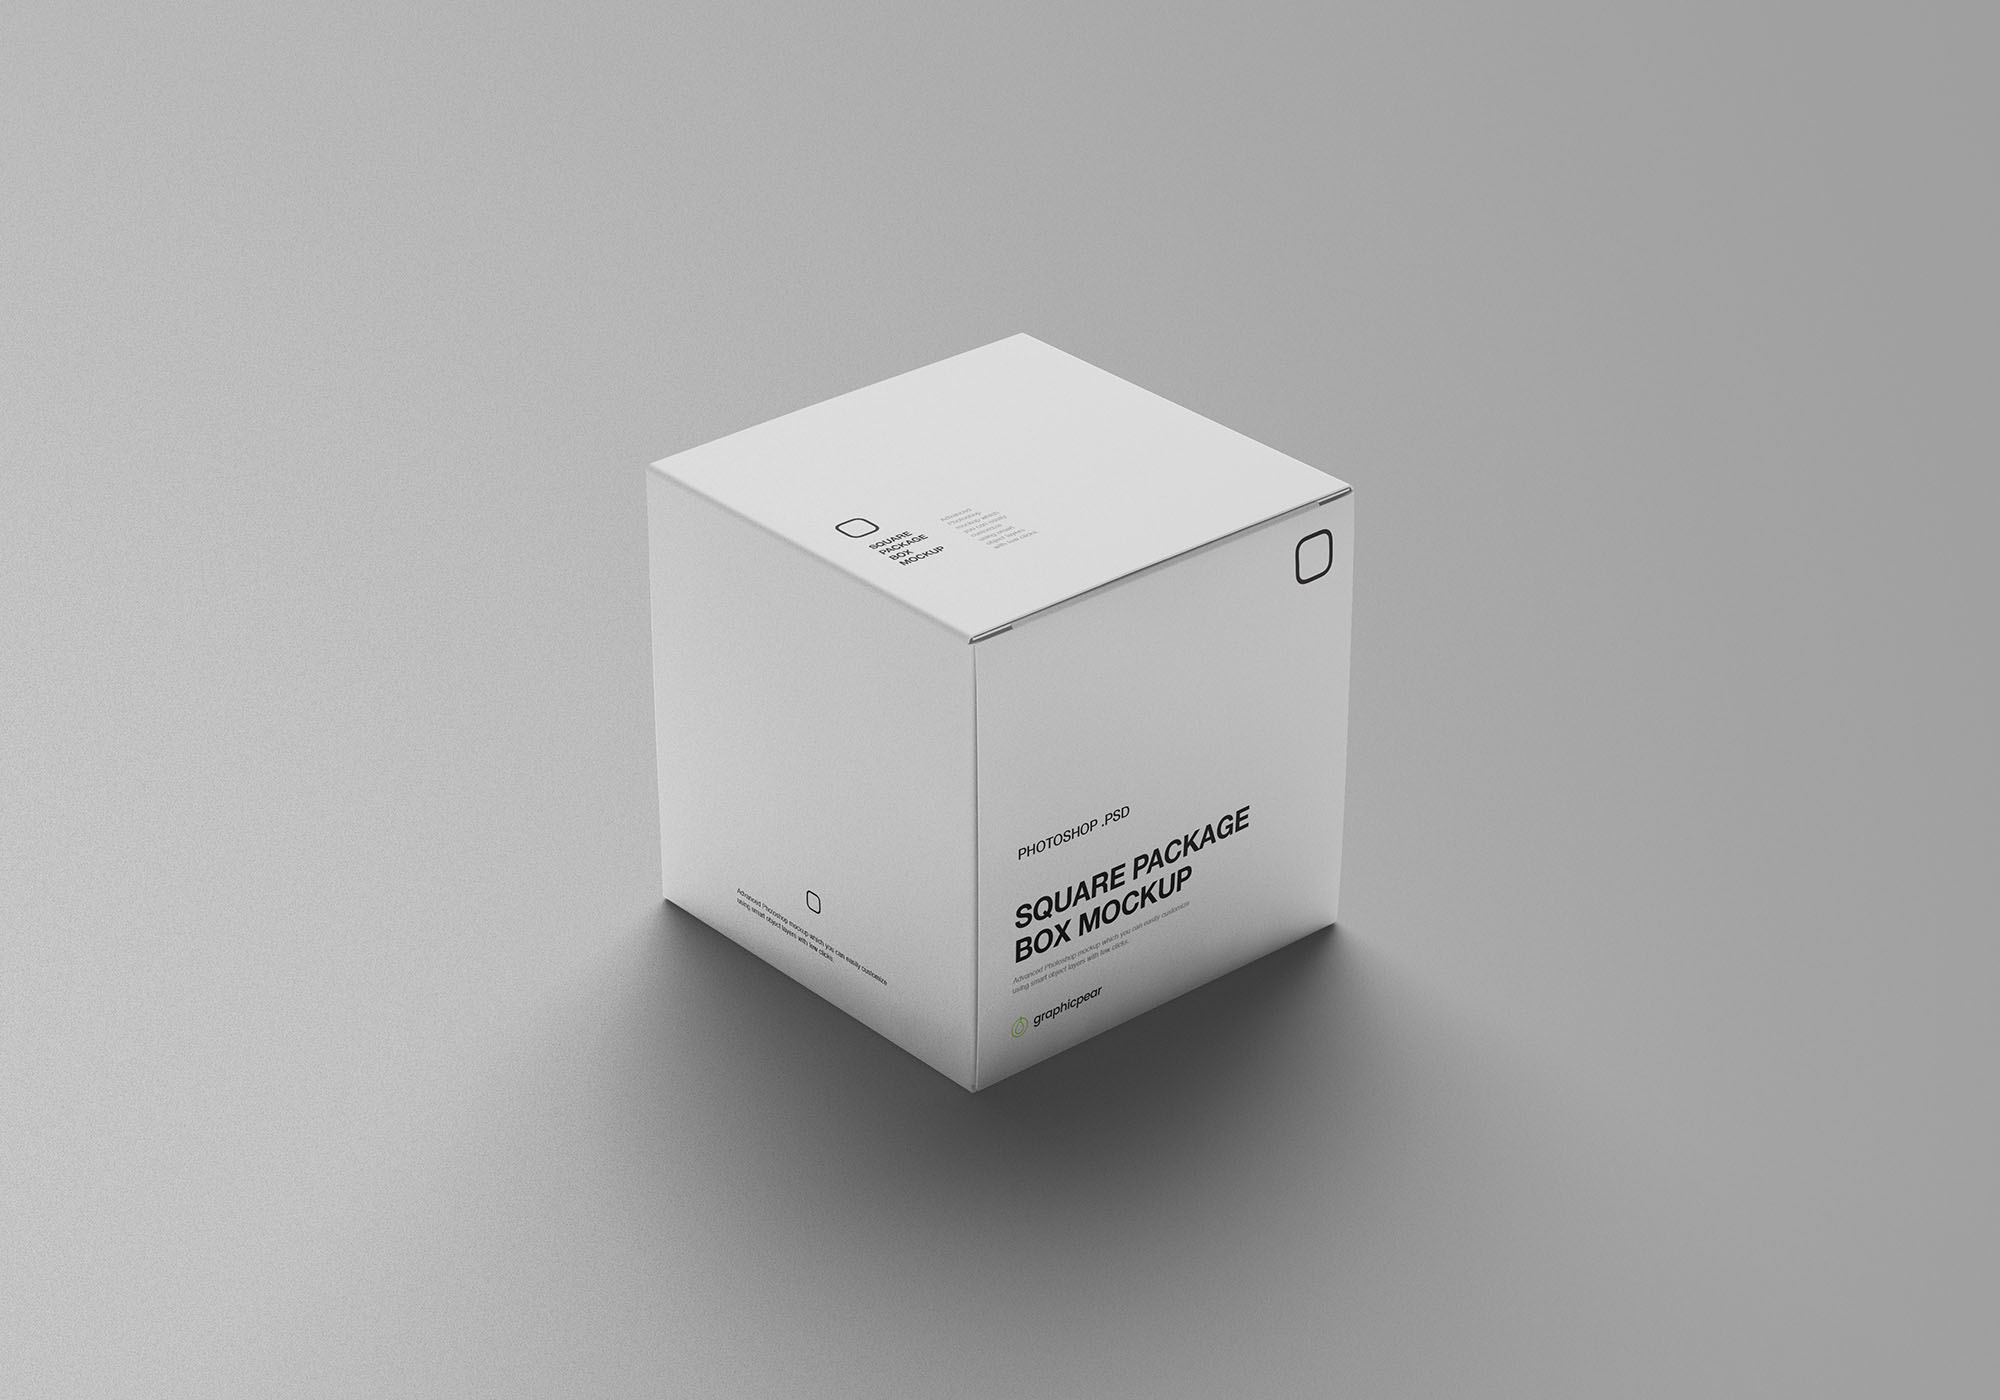 方形包装盒设计效果图样机模板 Square Package Box Mockup插图(5)